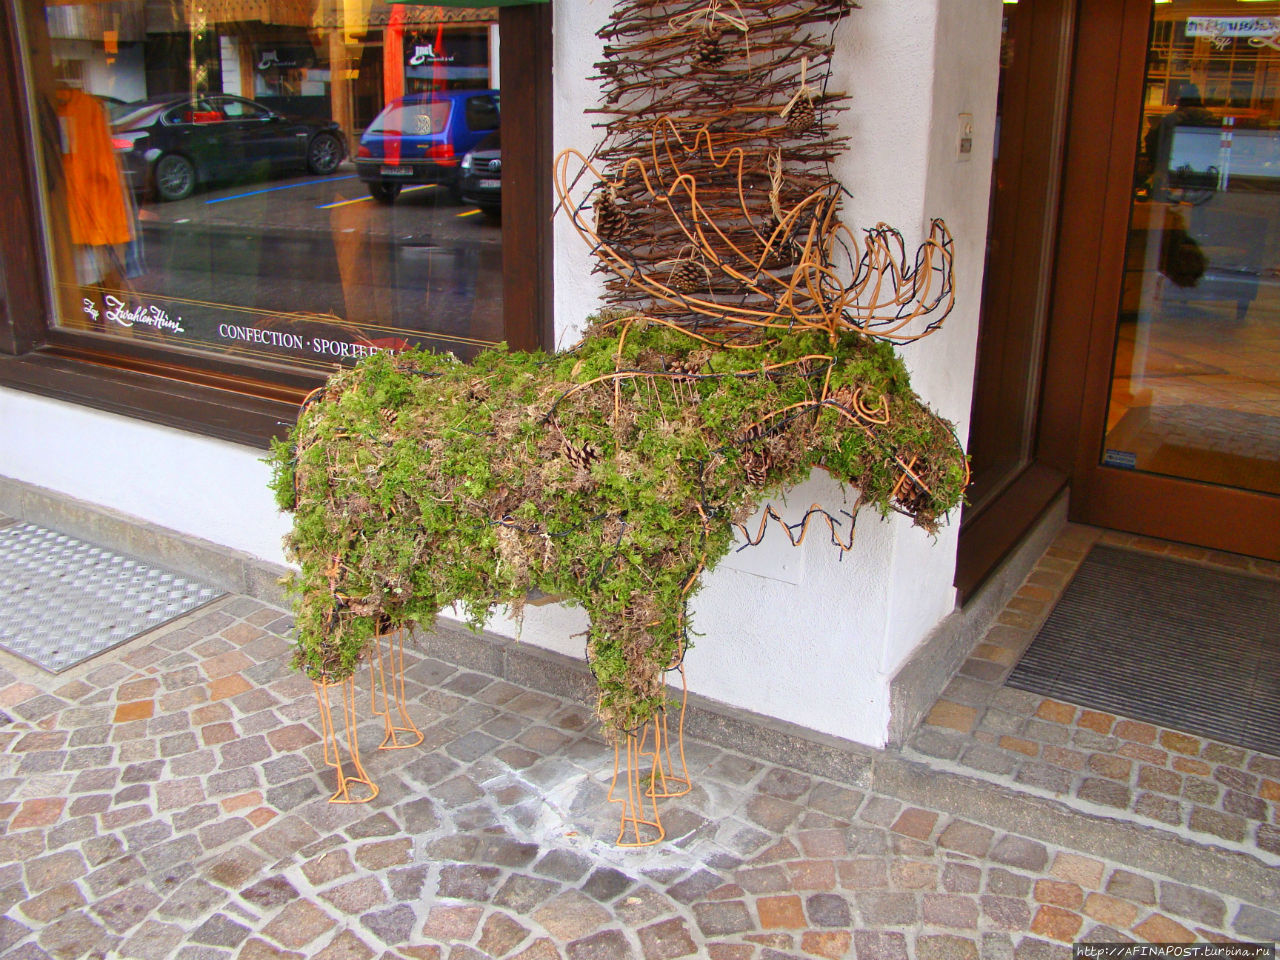 Заанен и деревенские козы Занен, Швейцария